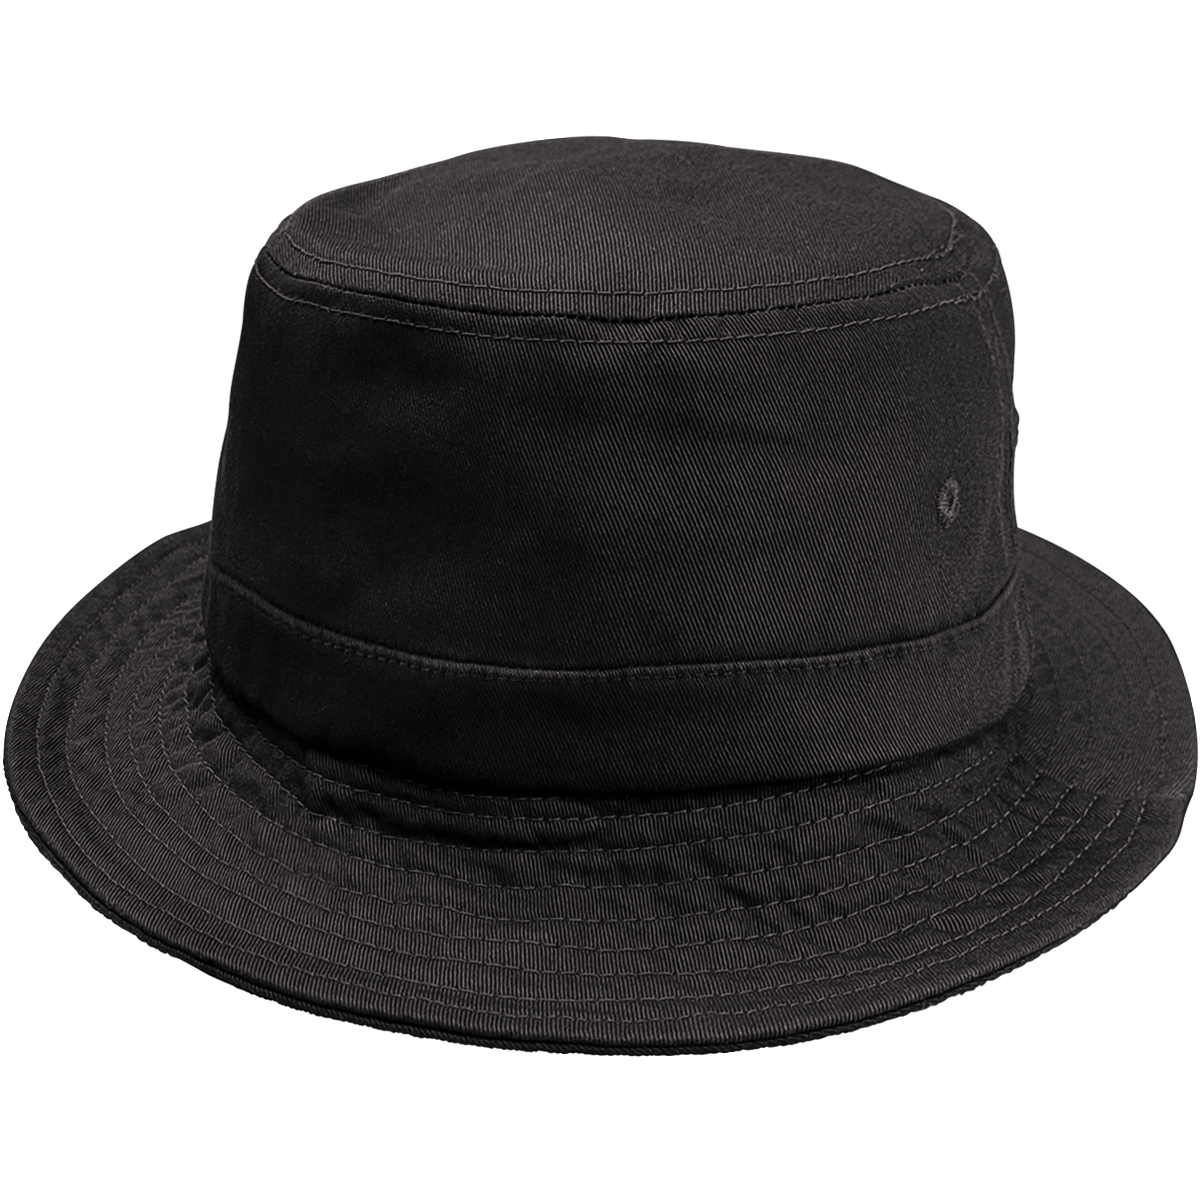 2 Brim Bucket Hat - 7150 Navy / SM/MD